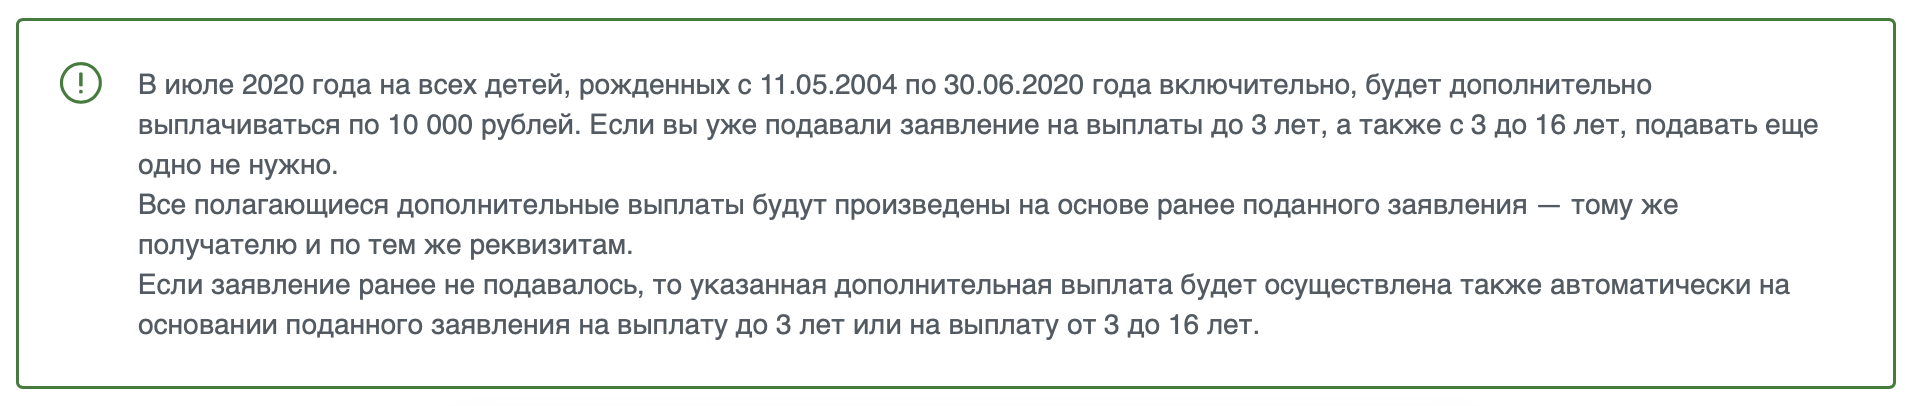 Единовременная выплата 10000 рублей на ребенка от 3 до 16 лет